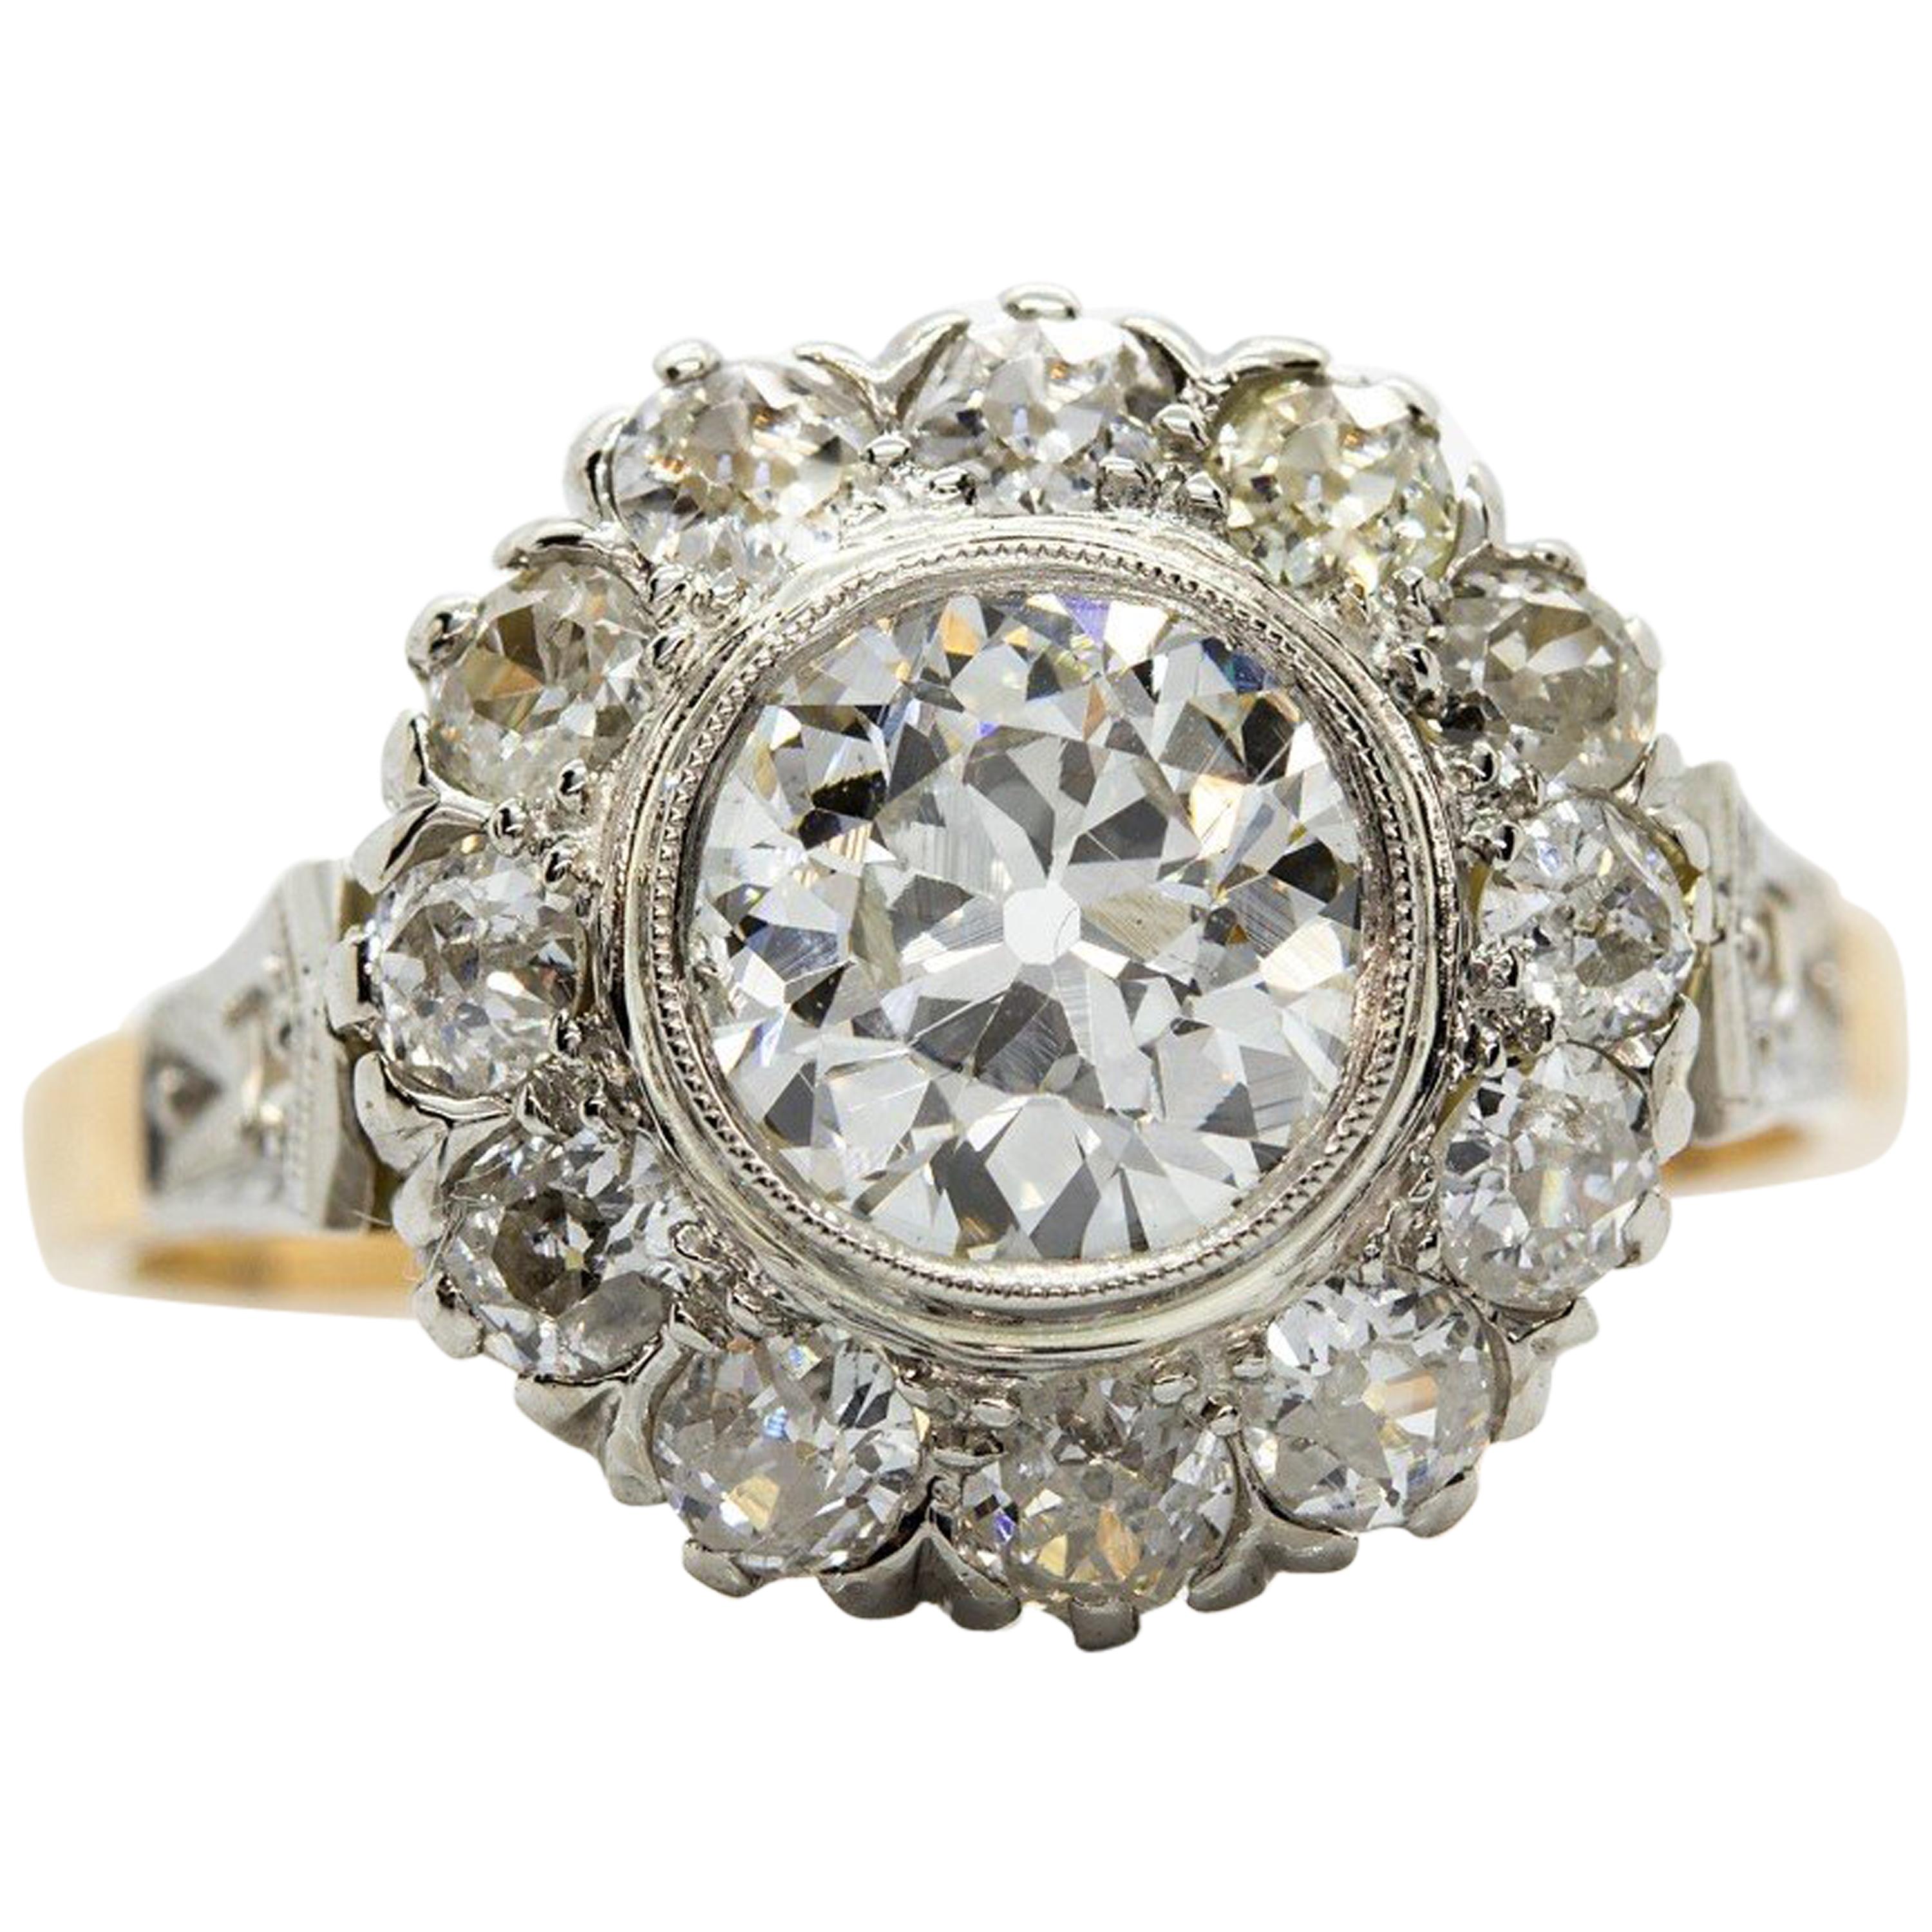 Antique Victorian 18 Karat Gold and Platinum Diamonds Ring